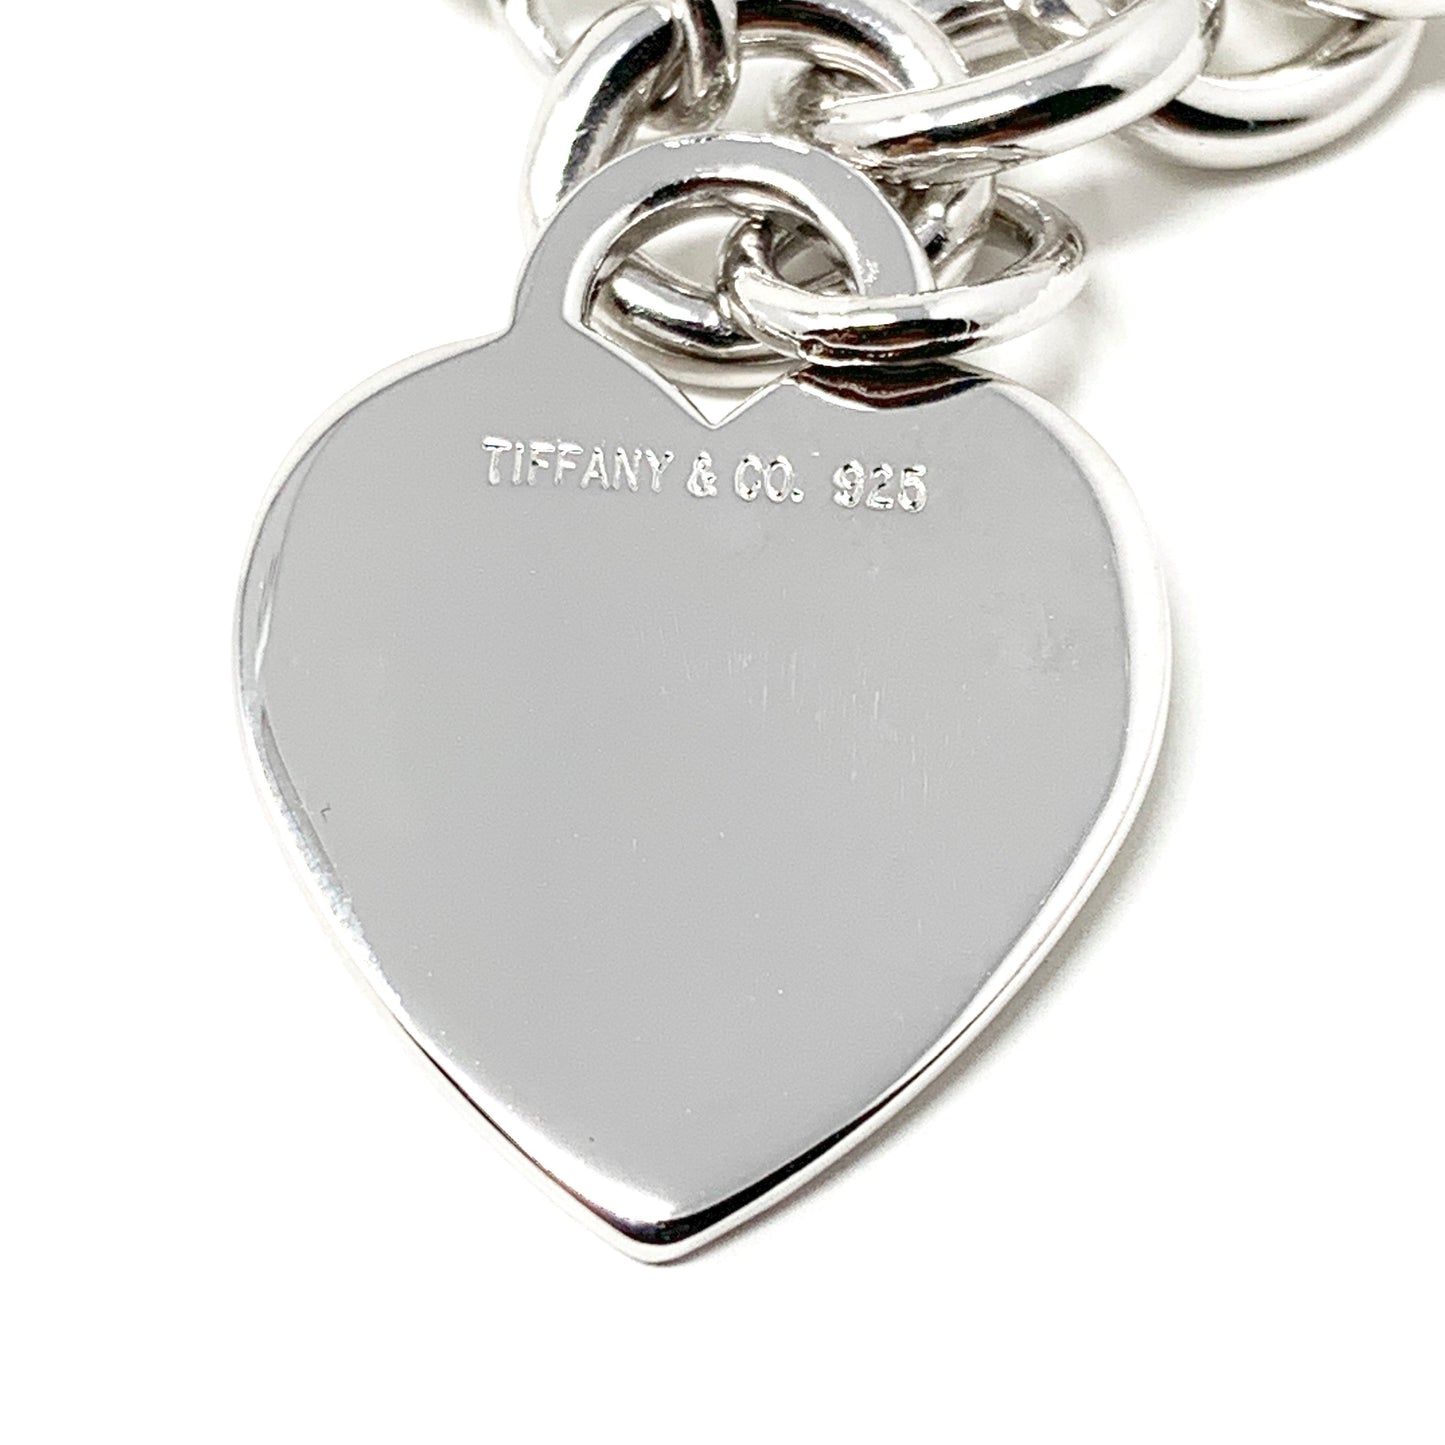 Tiffany &Co. Silver Heart Charm Bracelet